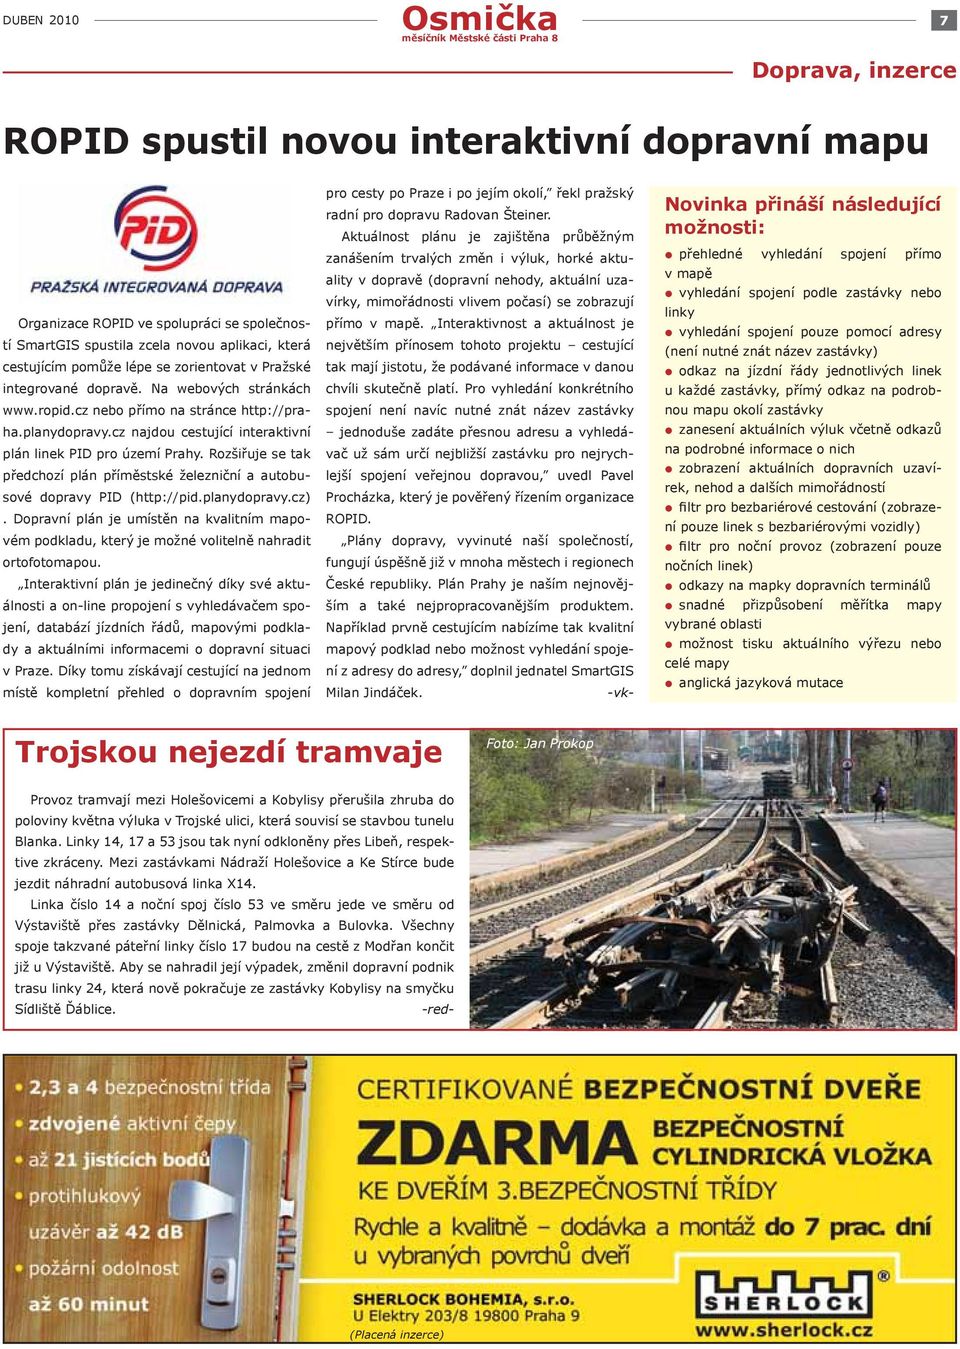 Rozšiřuje se tak předchozí plán příměstské železniční a autobusové dopravy PID (http://pid.planydopravy.cz).